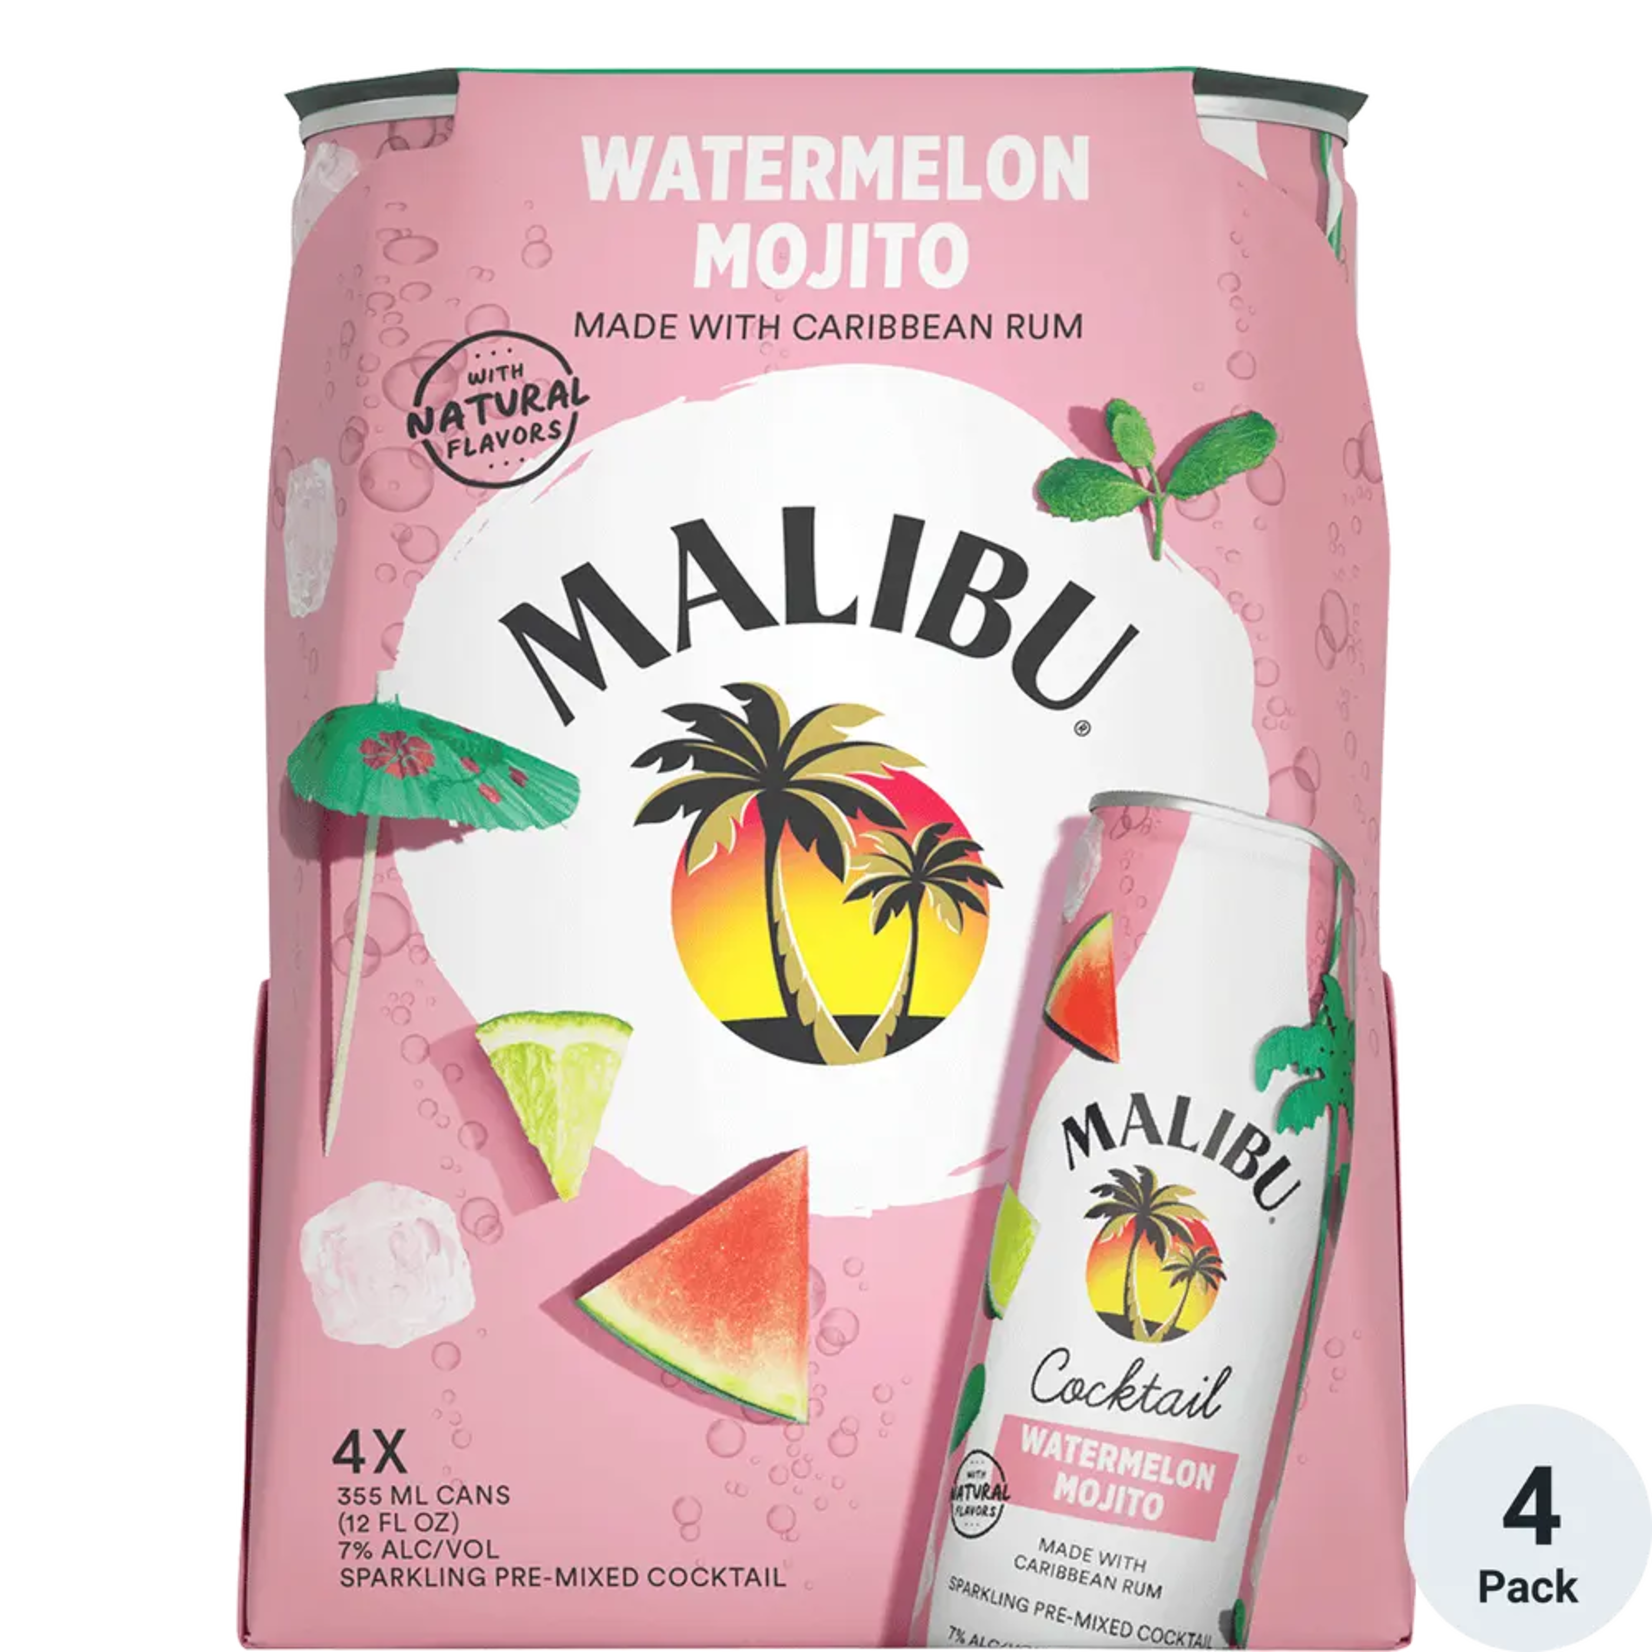 Malibu RTD Cocktail Watermelon Mojito 14Proof 4pk 12oz Cans